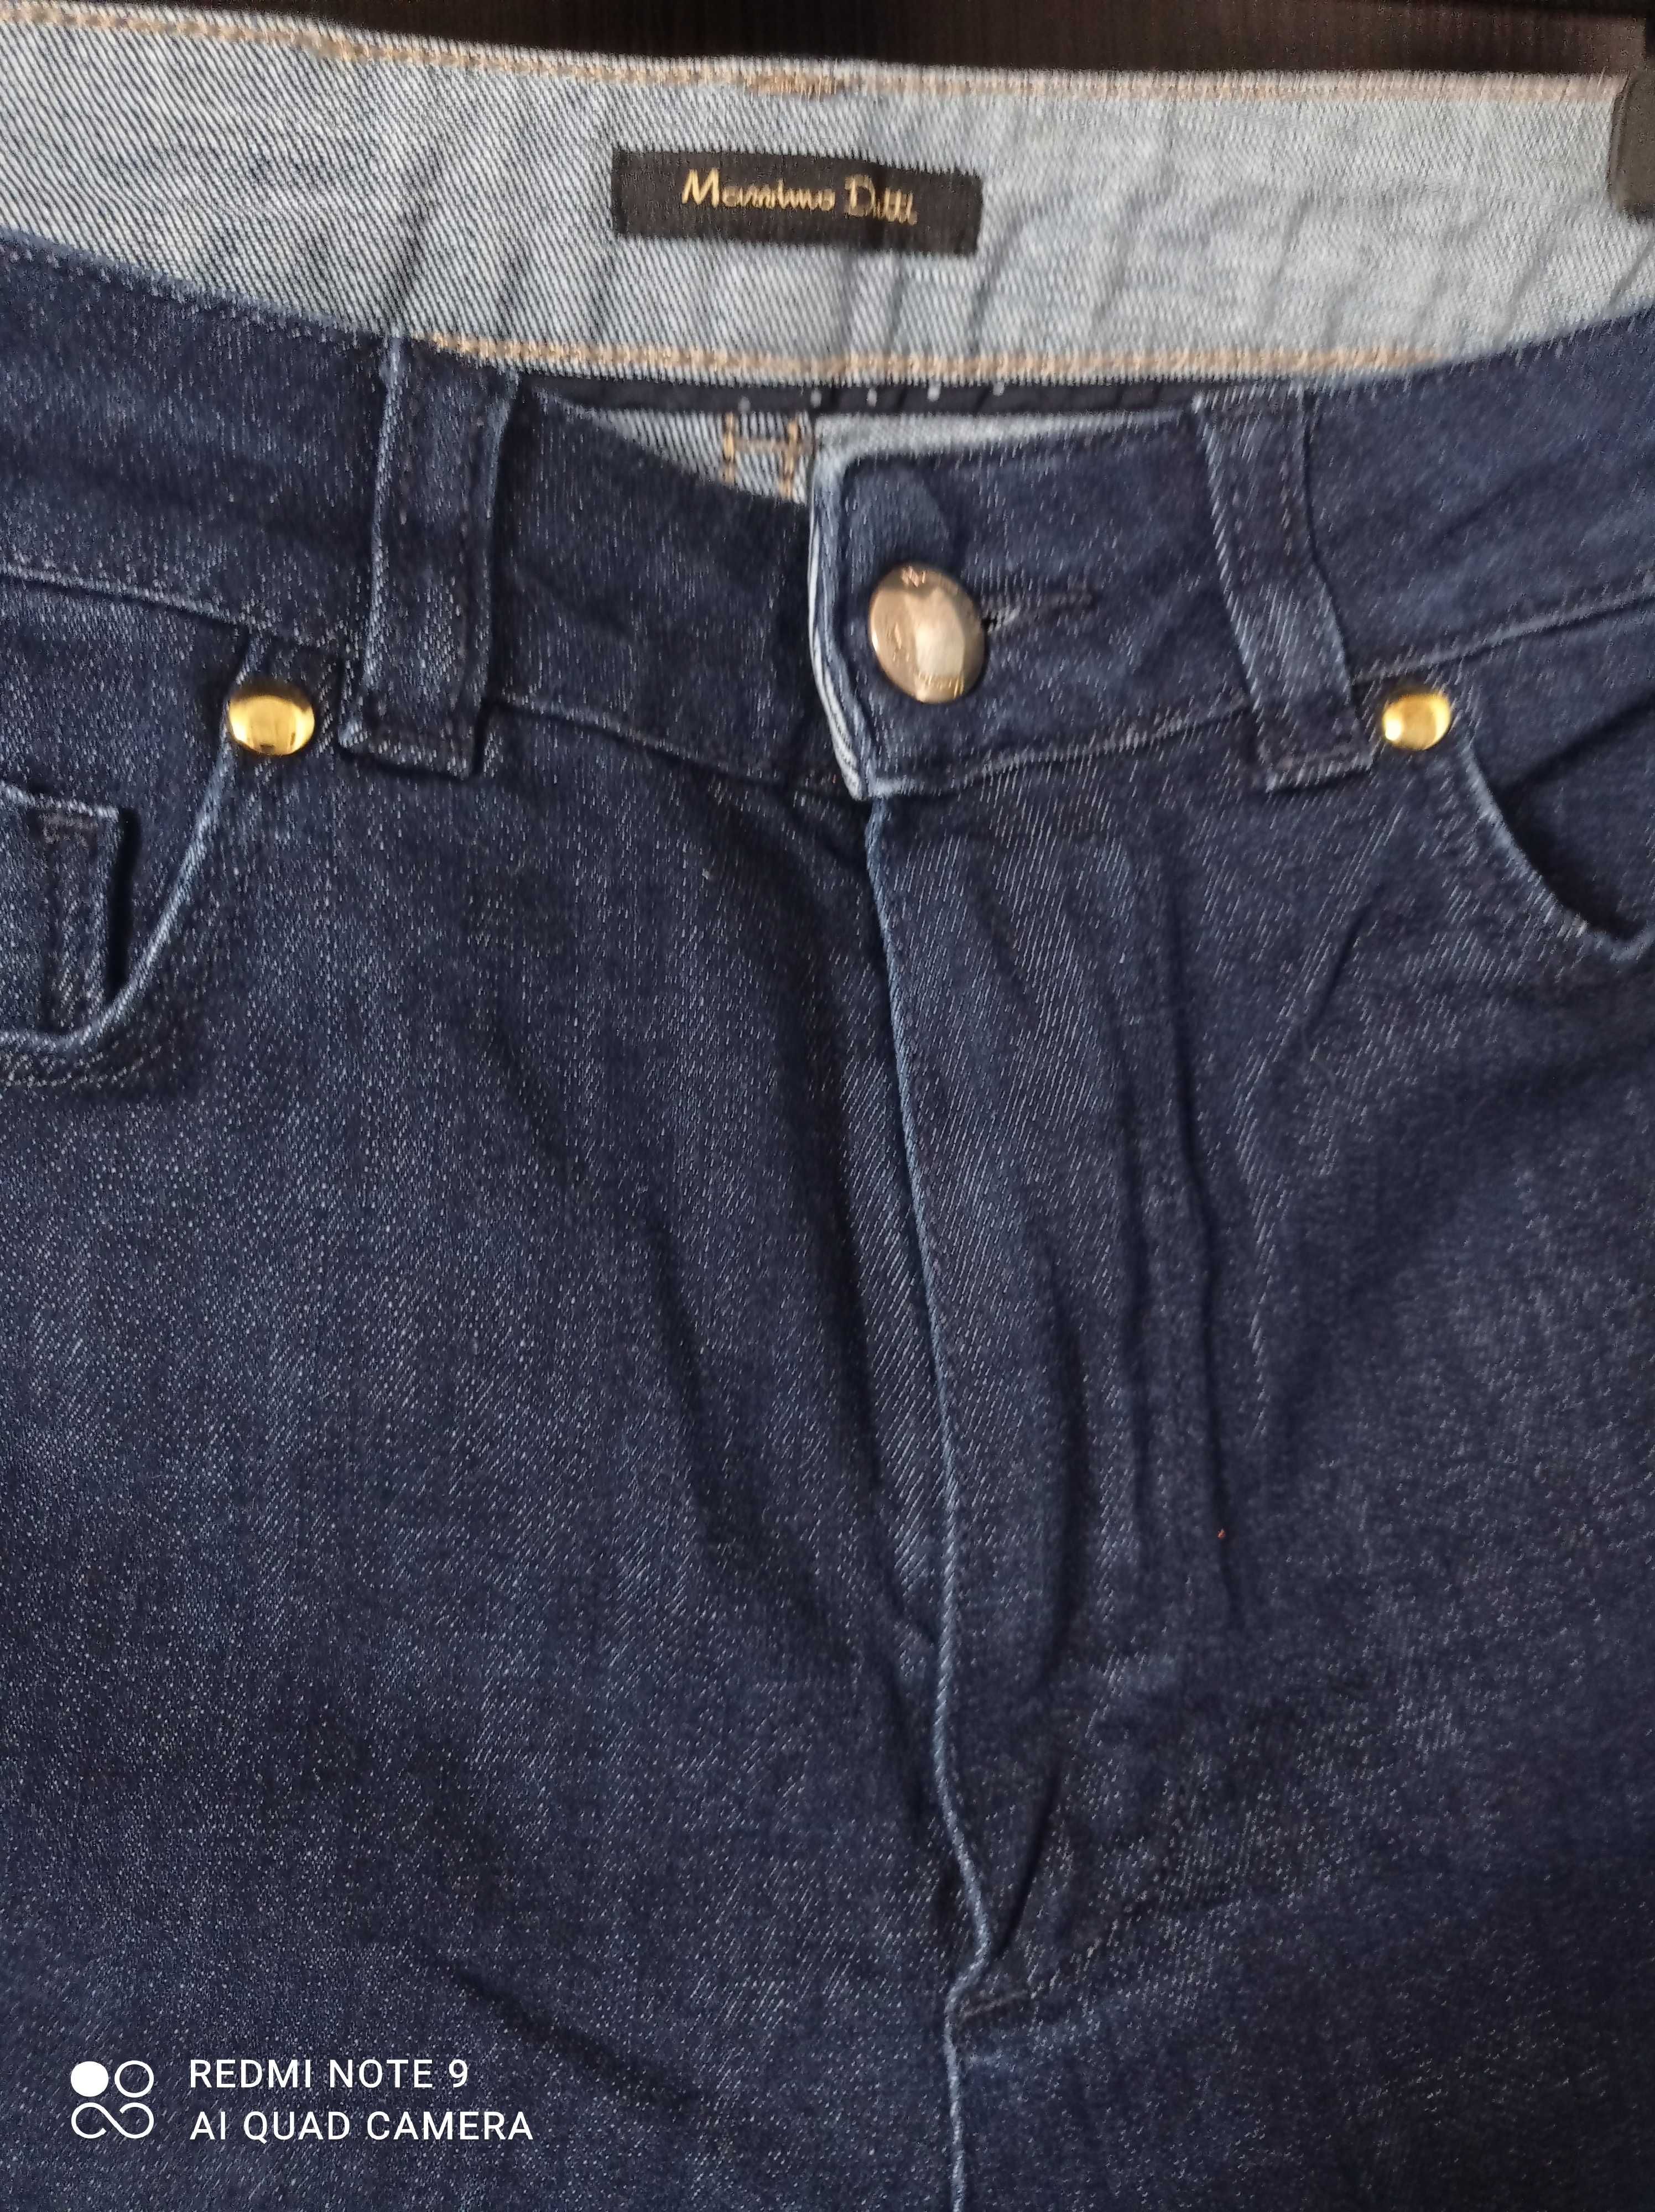 Massimo Dutti spodnie jeansowe rozm. 36